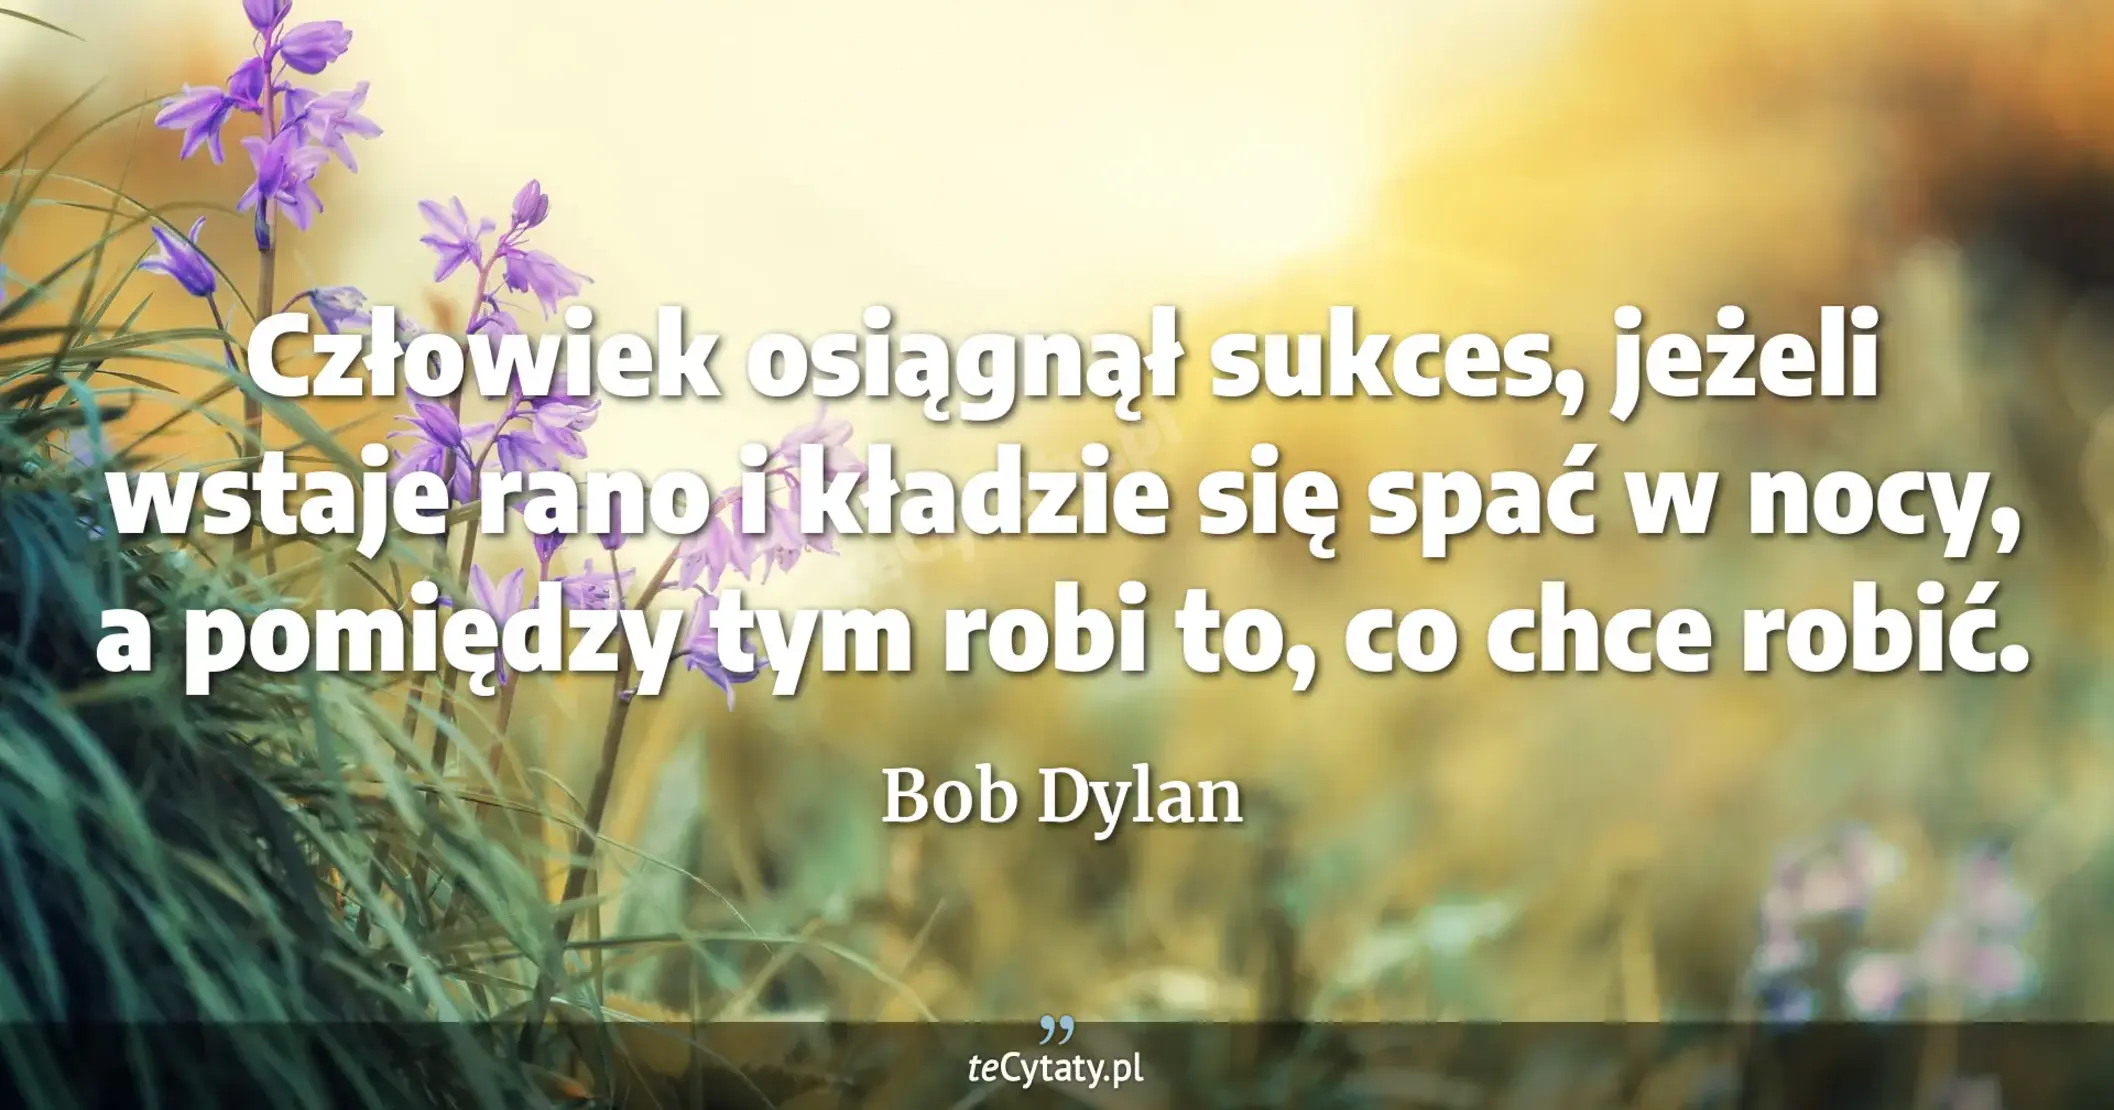 Człowiek osiągnął sukces, jeżeli wstaje rano i kładzie się spać w nocy, a pomiędzy tym robi to, co chce robić. - Bob Dylan